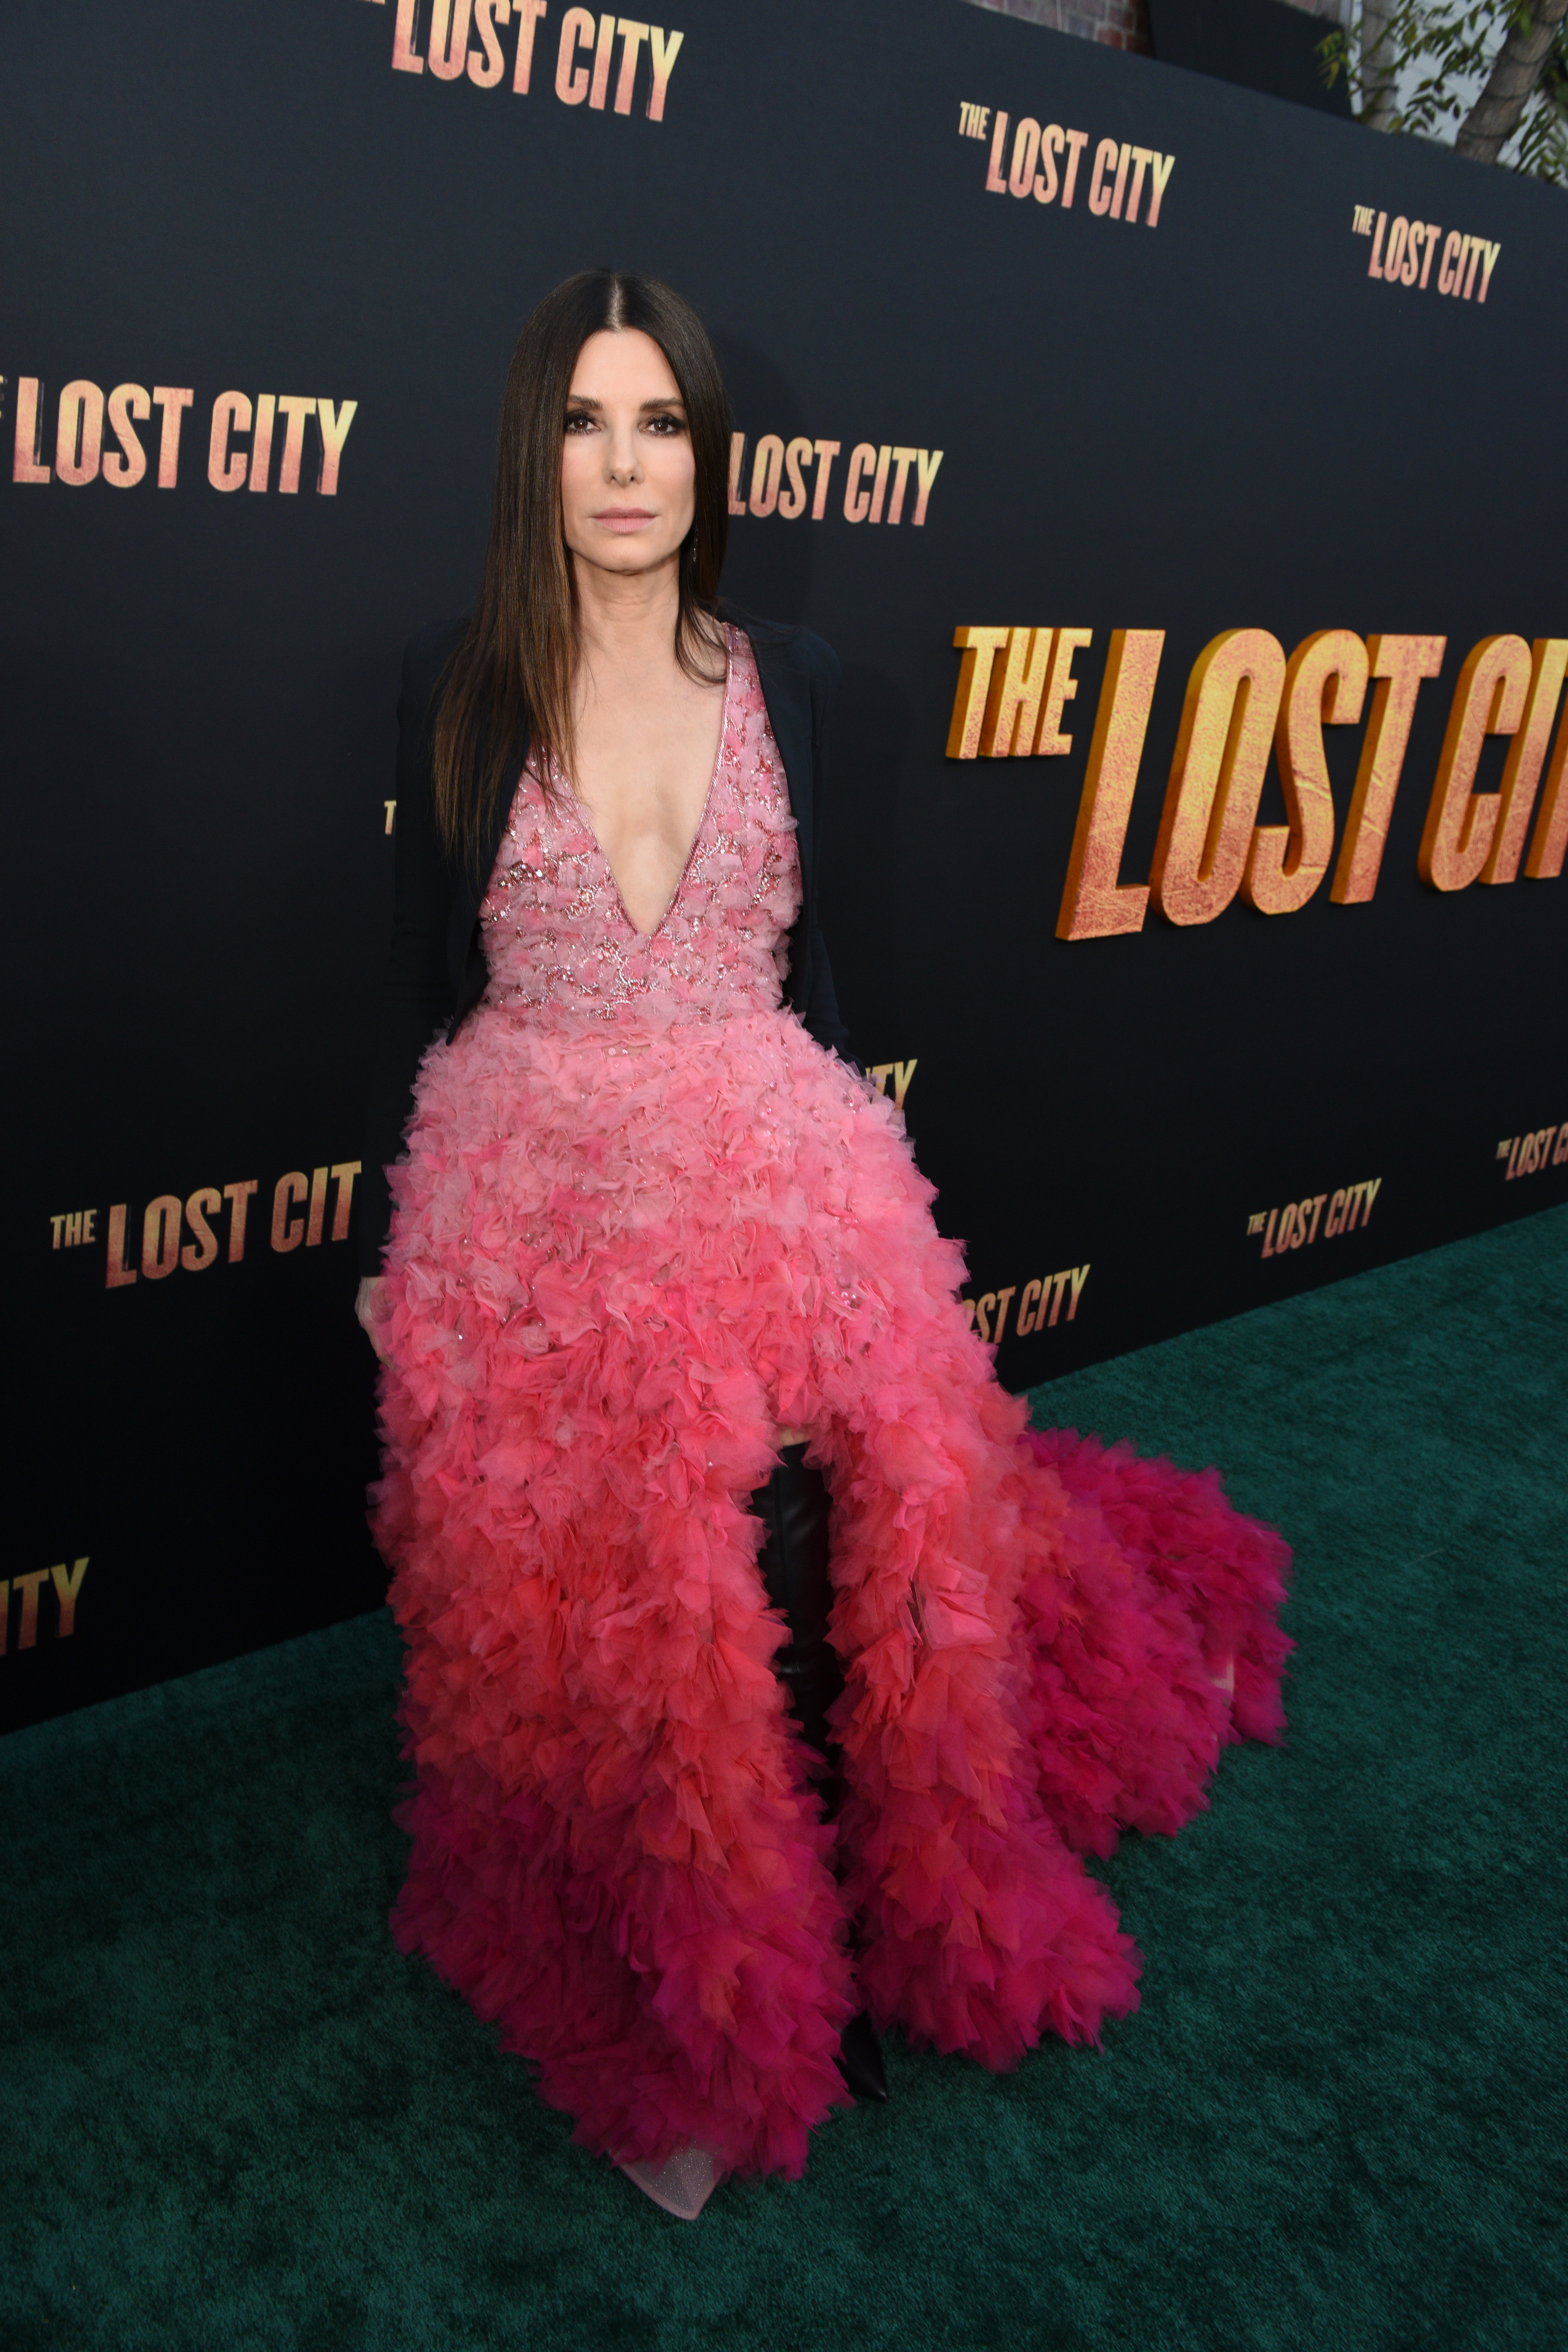 Sandra Bullock assiste à la première de 'The Lost City' à Los Angeles au Regency Village Theatre le 21 mars 2022 à Los Angeles, Californie | Source : Getty Images